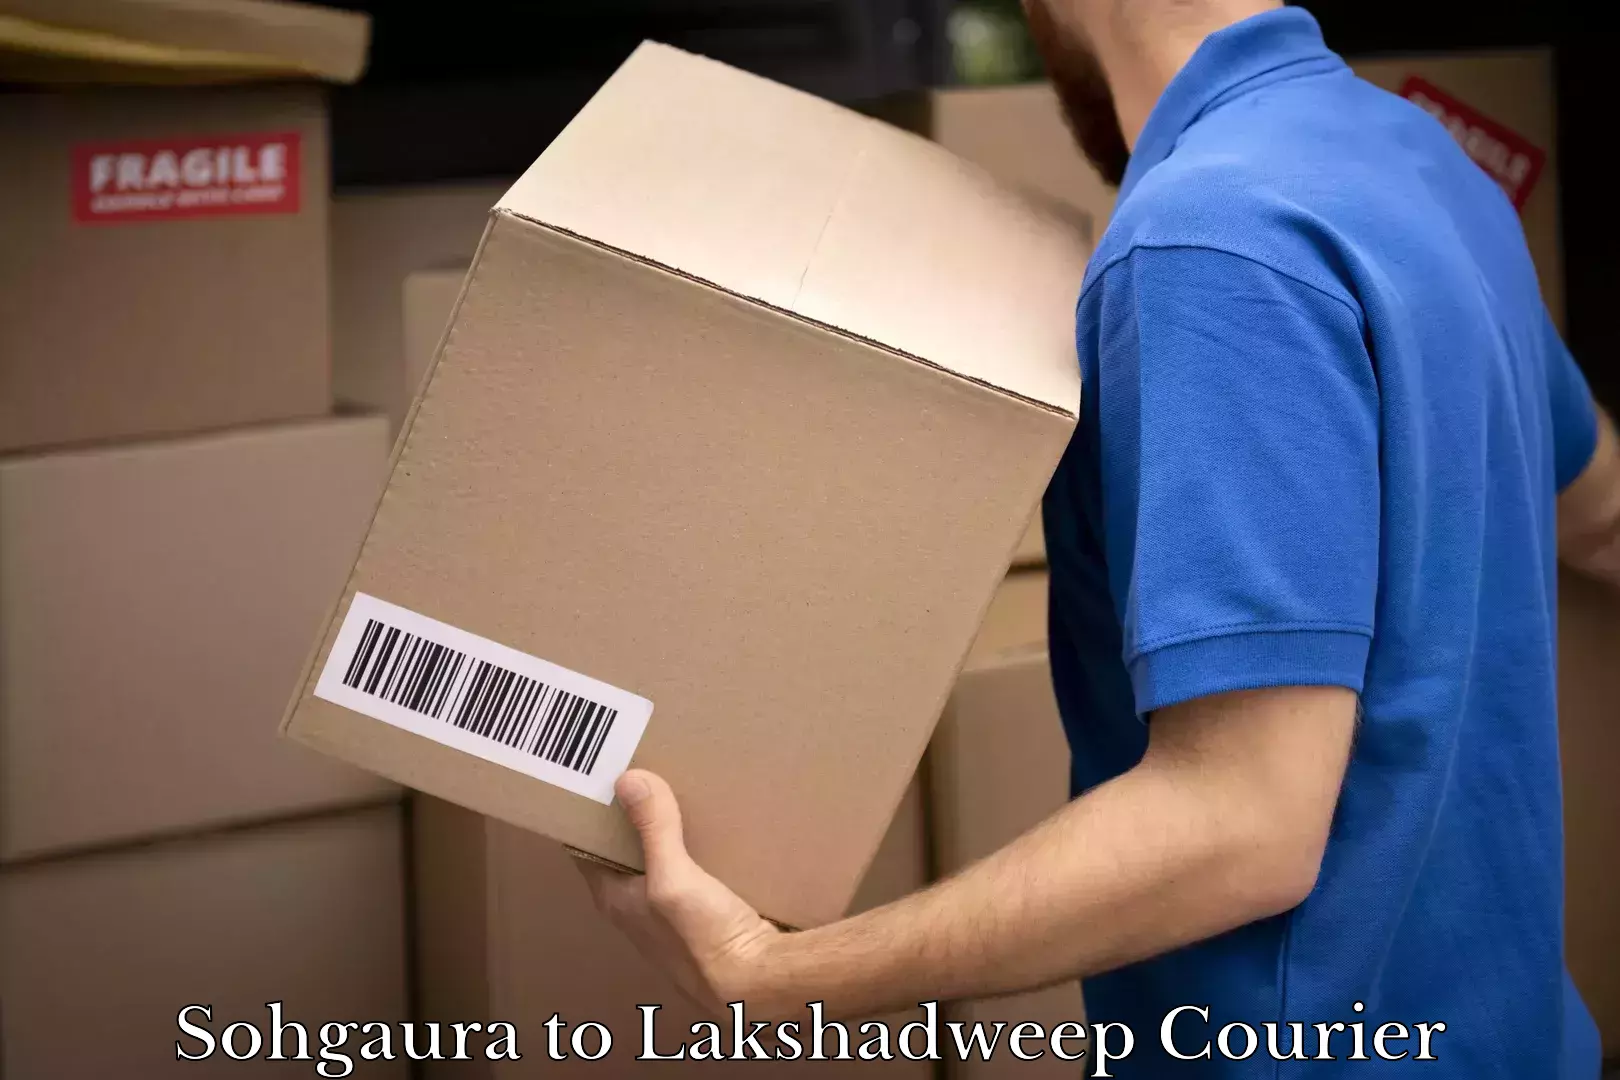 Individual parcel service Sohgaura to Lakshadweep